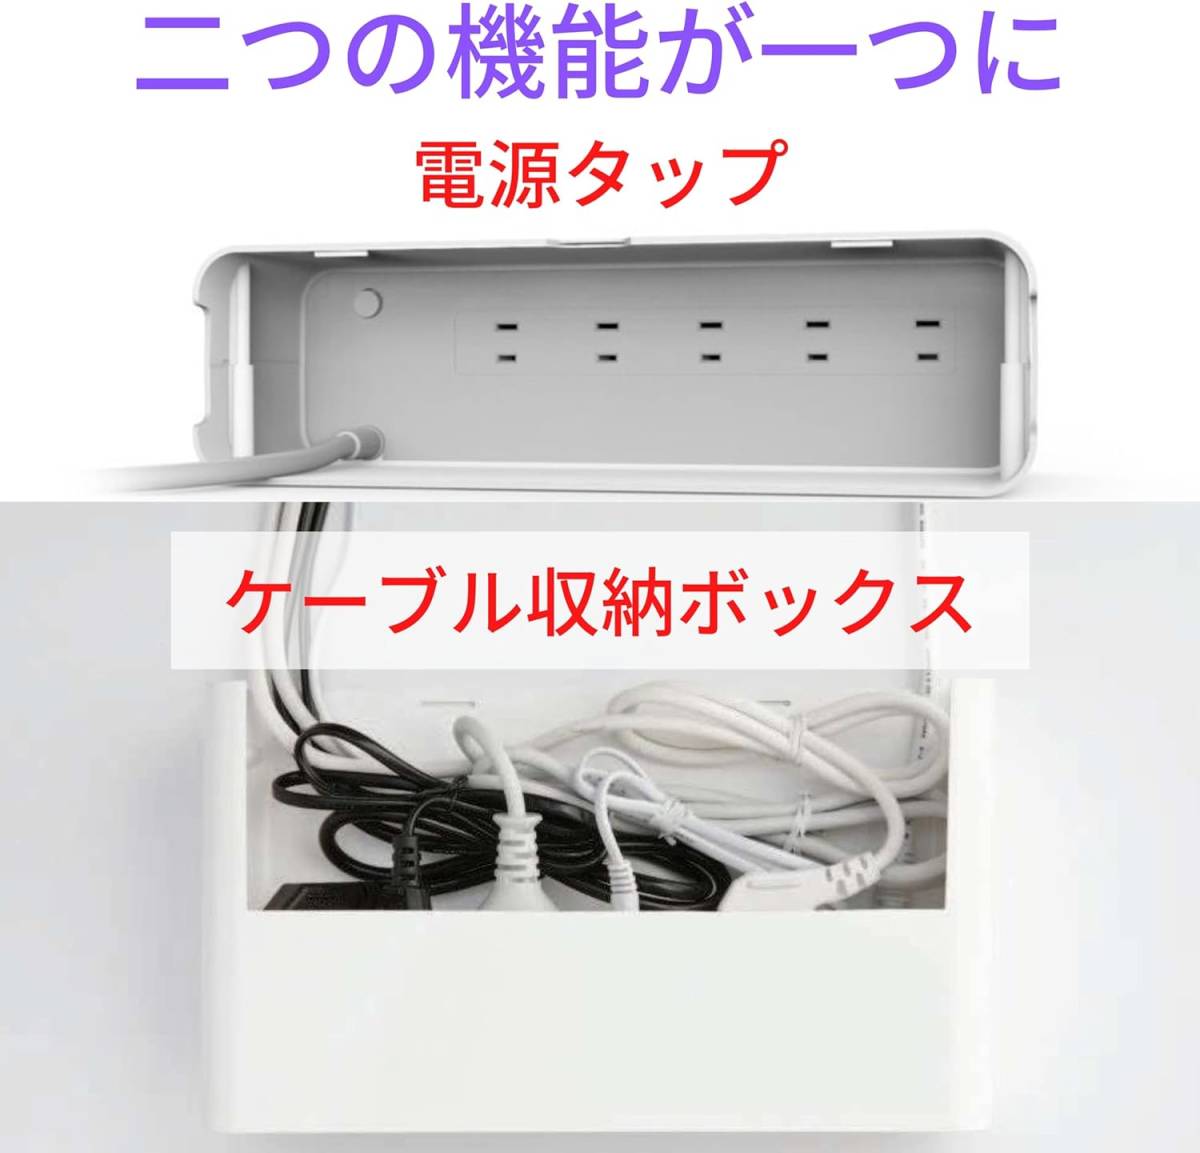 延長コード 近未来デザインボックス 電源タップ マルチタップ ケーブル収納 USBポート 個別スイッチ コンパクト スマート インテリア